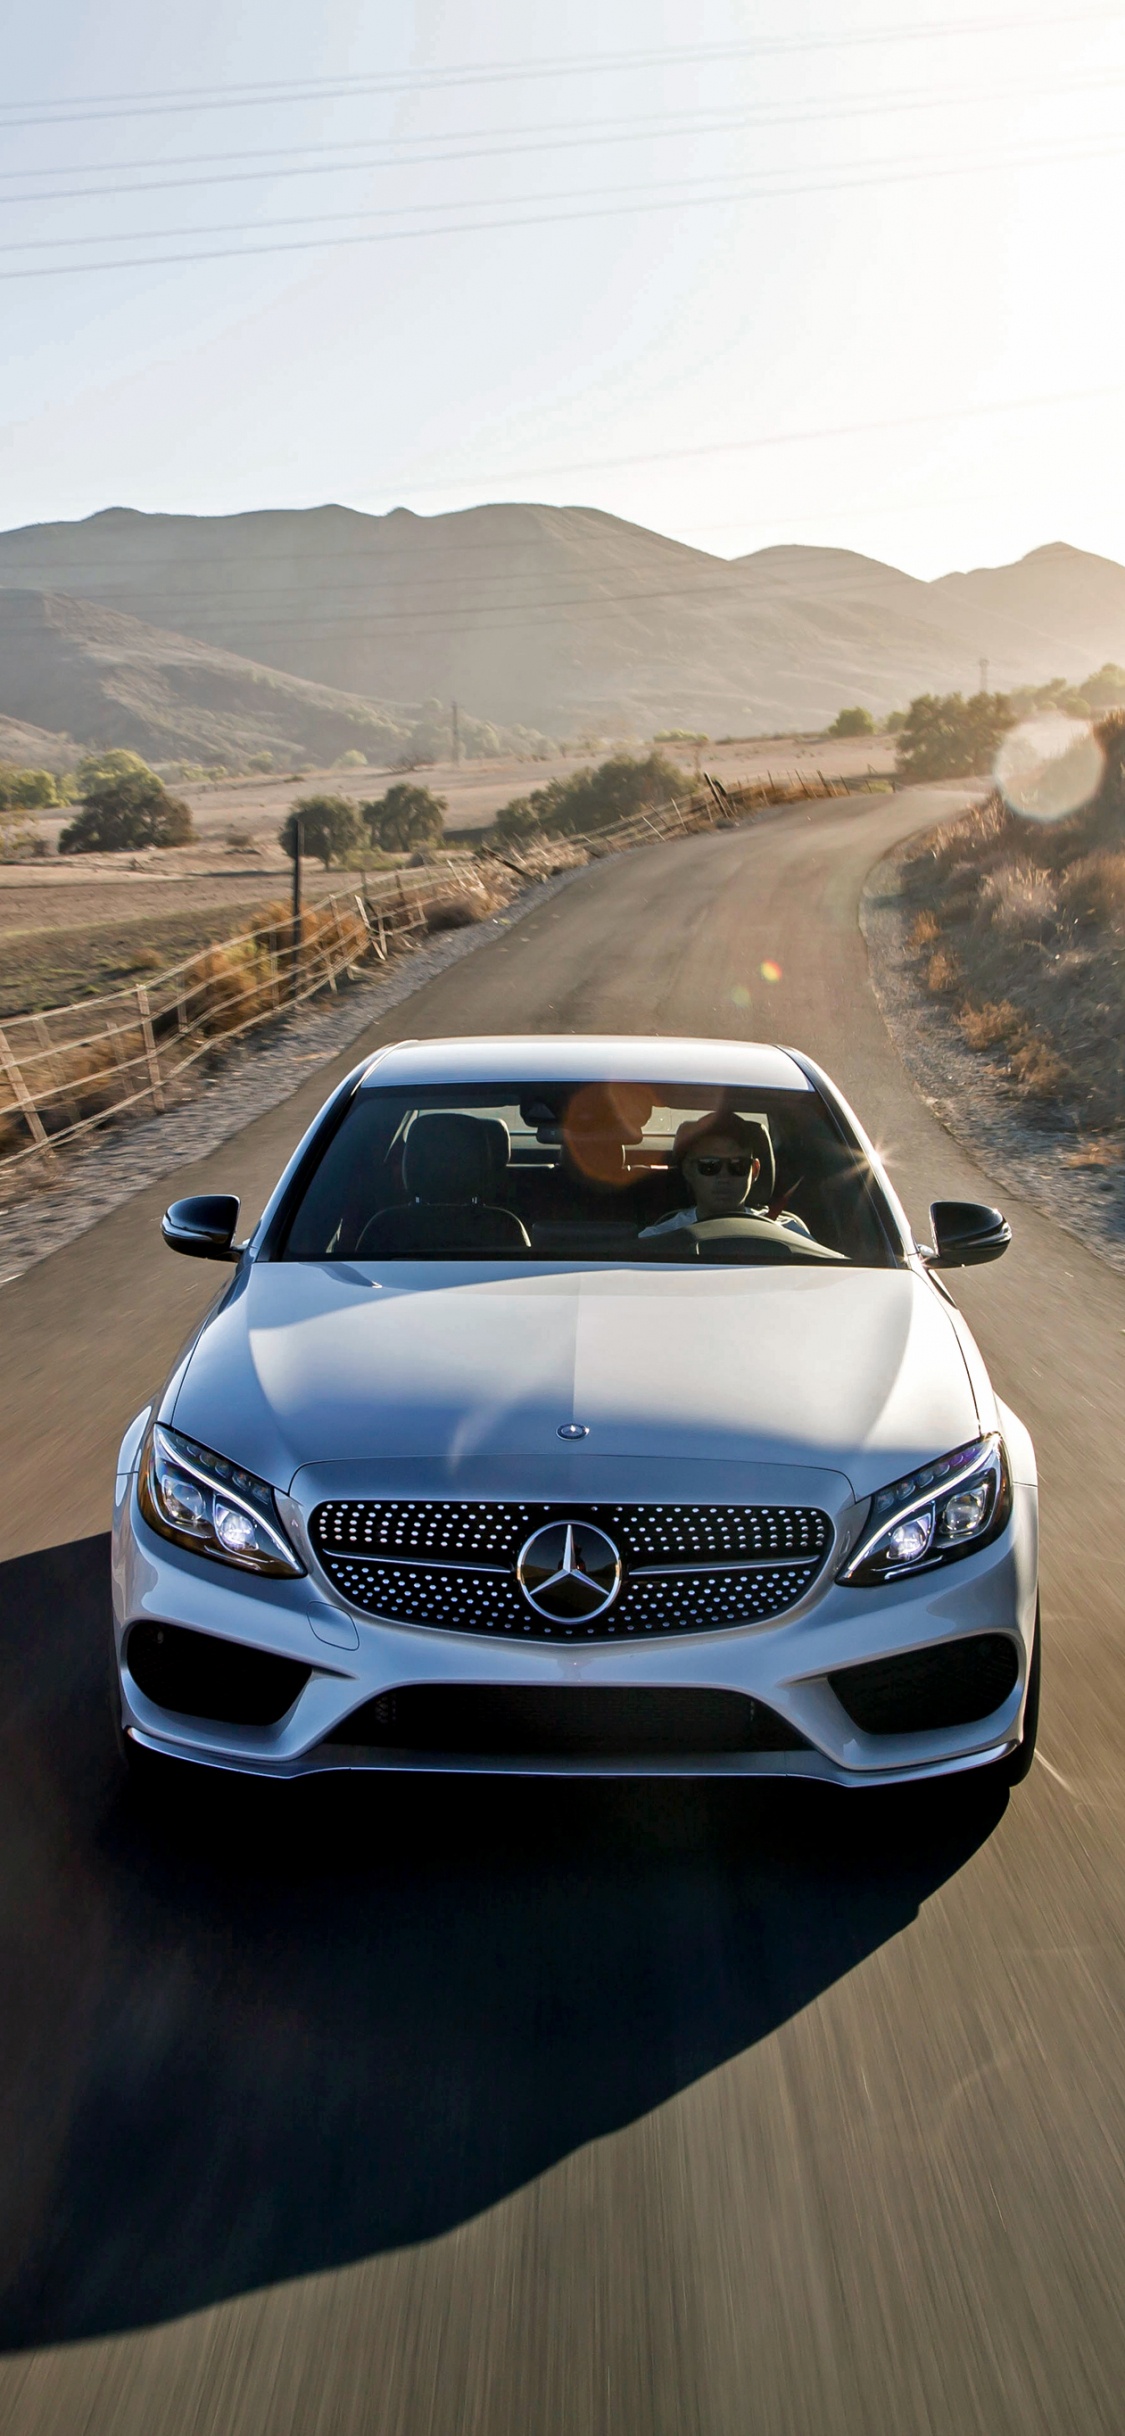 Voiture Mercedes Benz Blanche Sur Route Pendant la Journée. Wallpaper in 1125x2436 Resolution